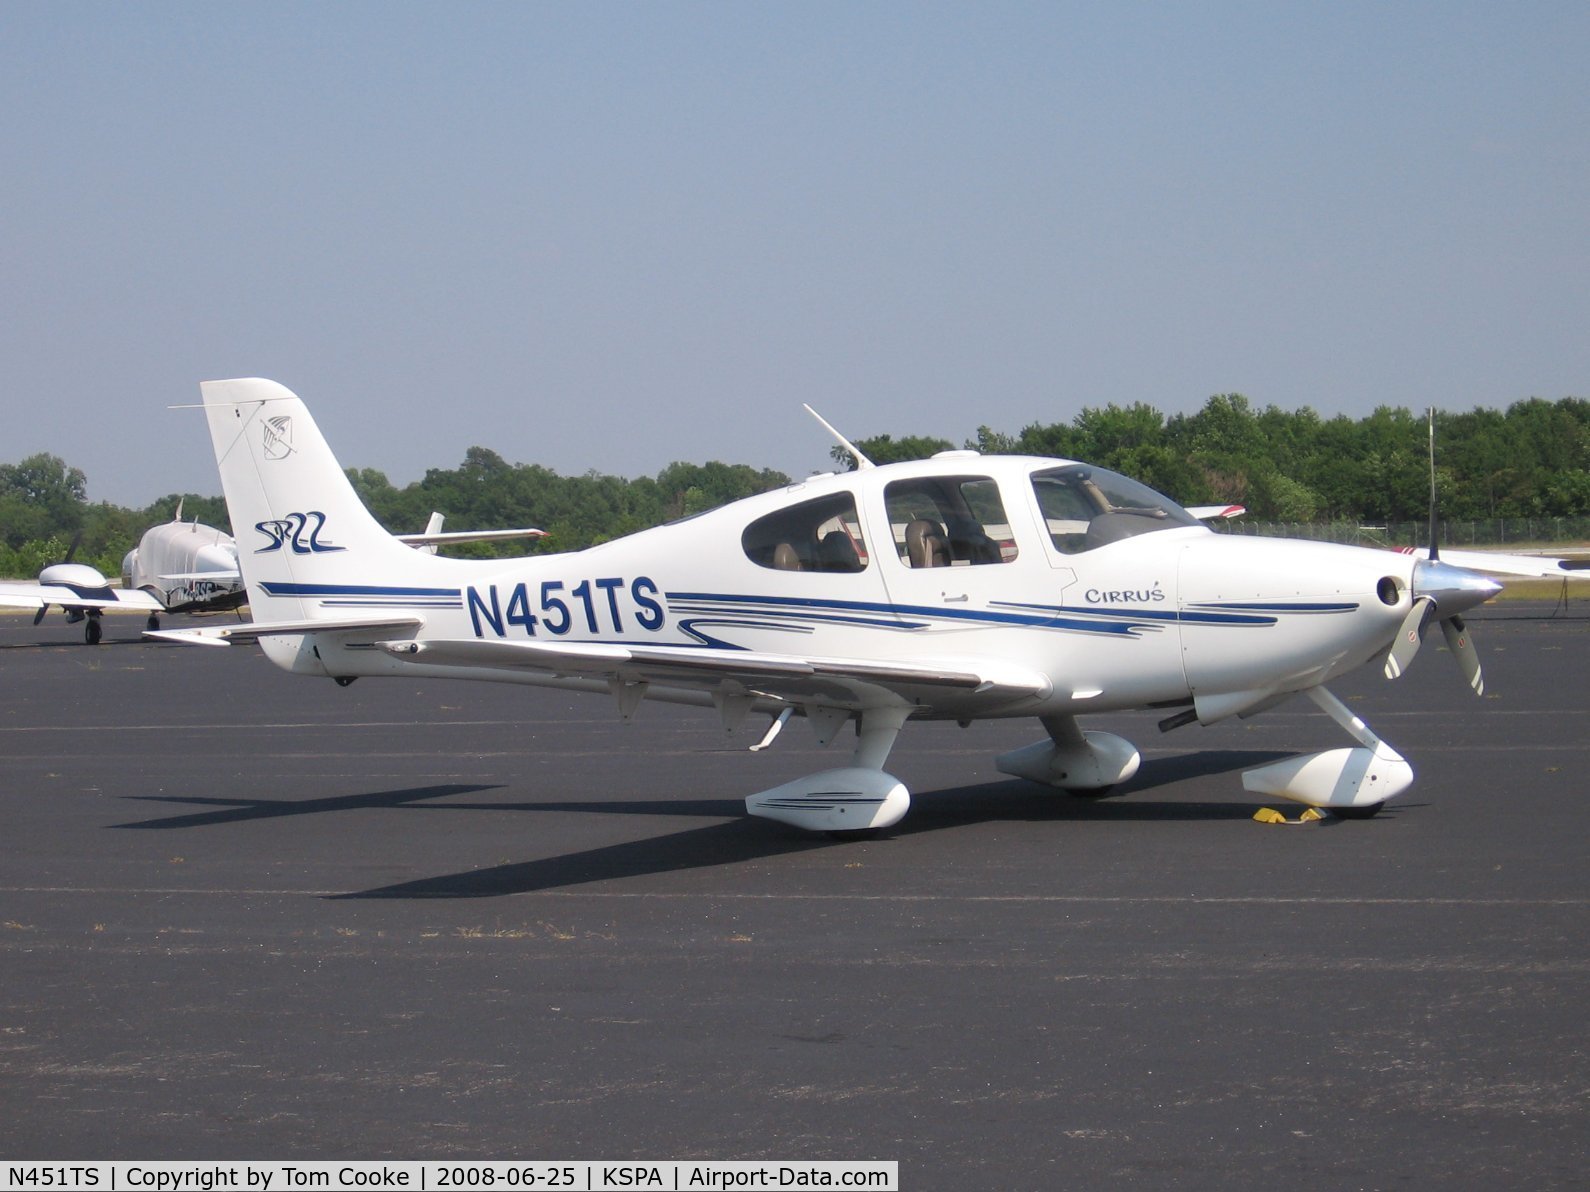 N451TS, 2003 Cirrus SR22 C/N 0542, SR22 at Spartanburg